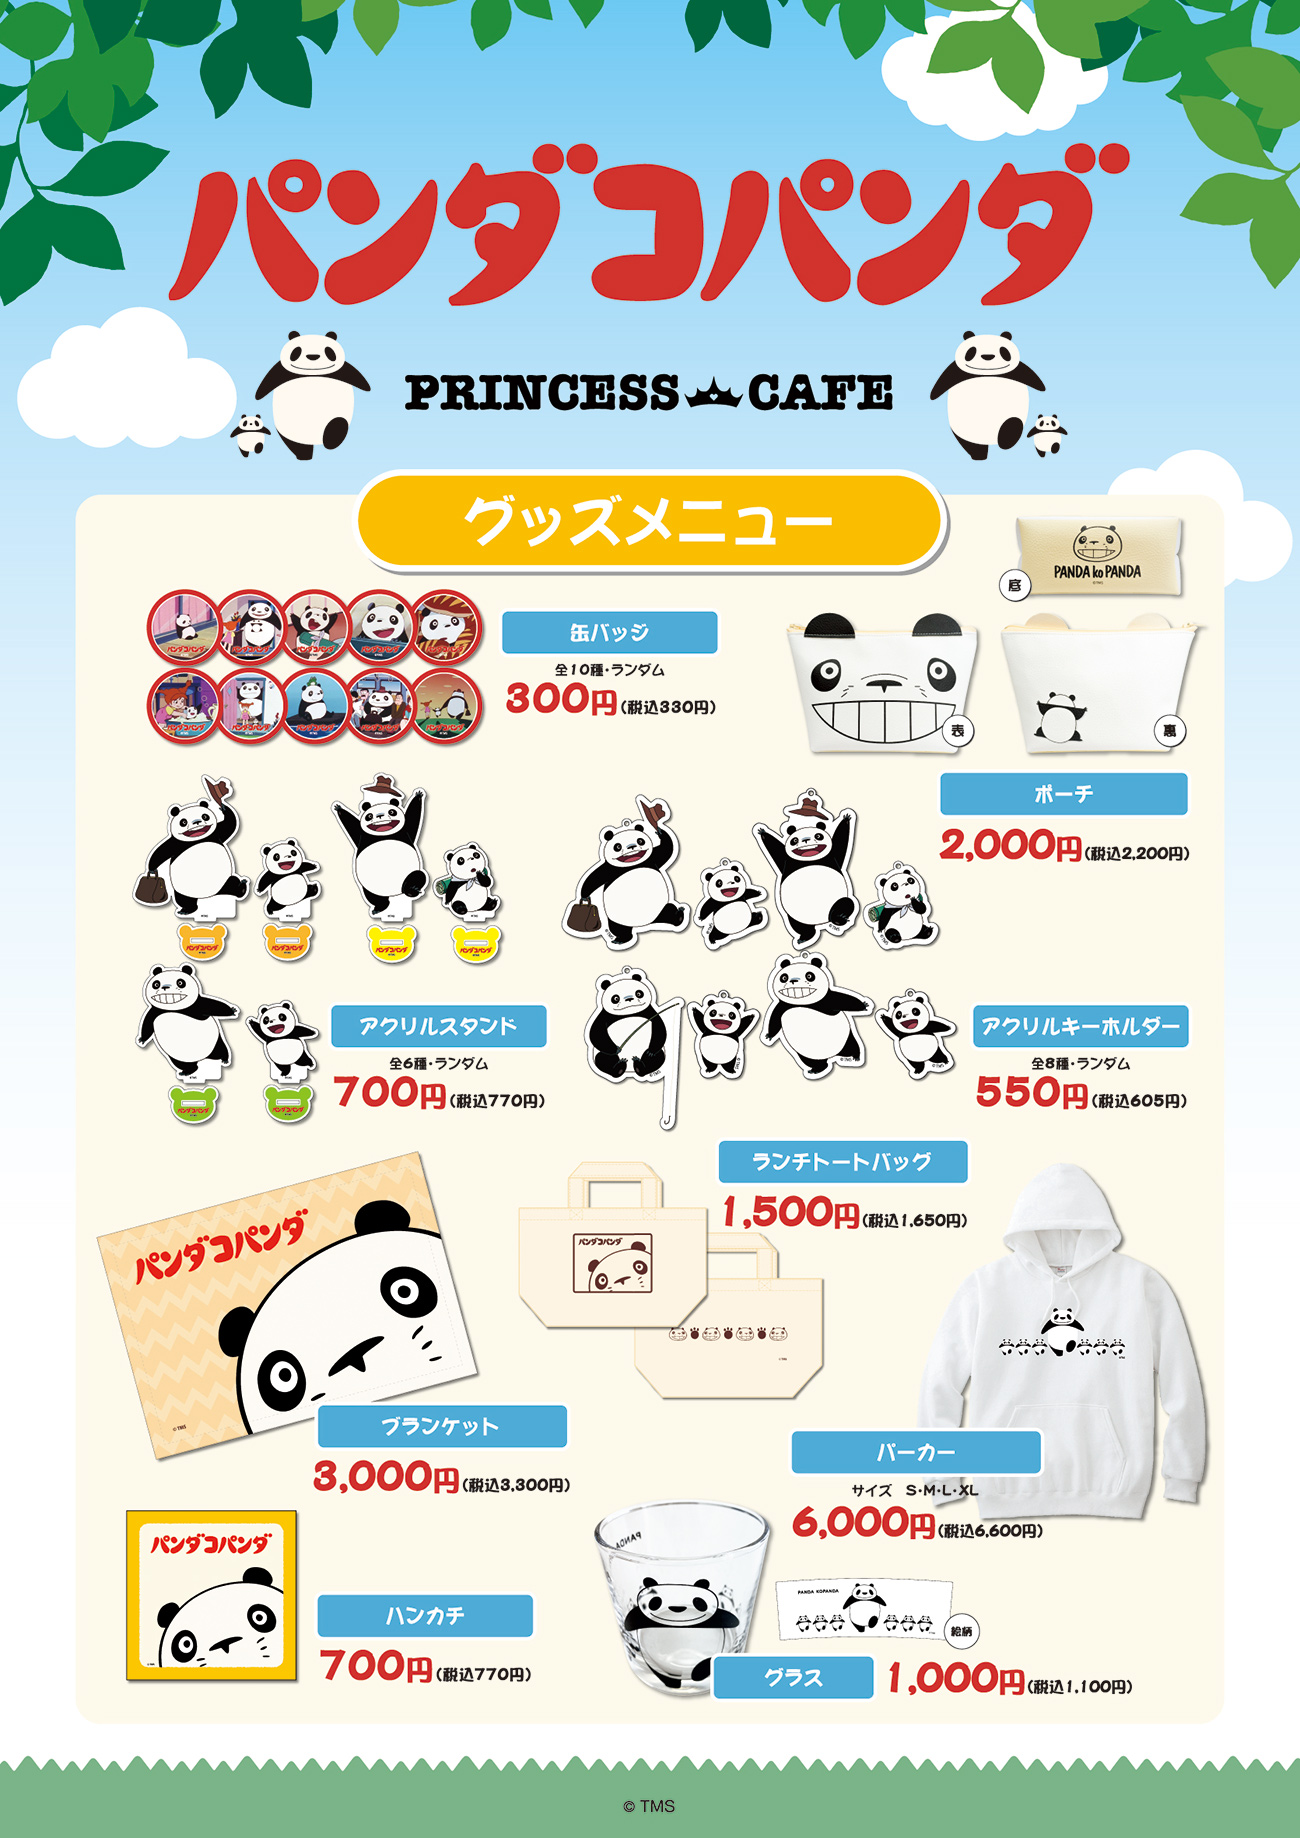 「パンダコパンダ」×「プリンセスカフェ」グッズ